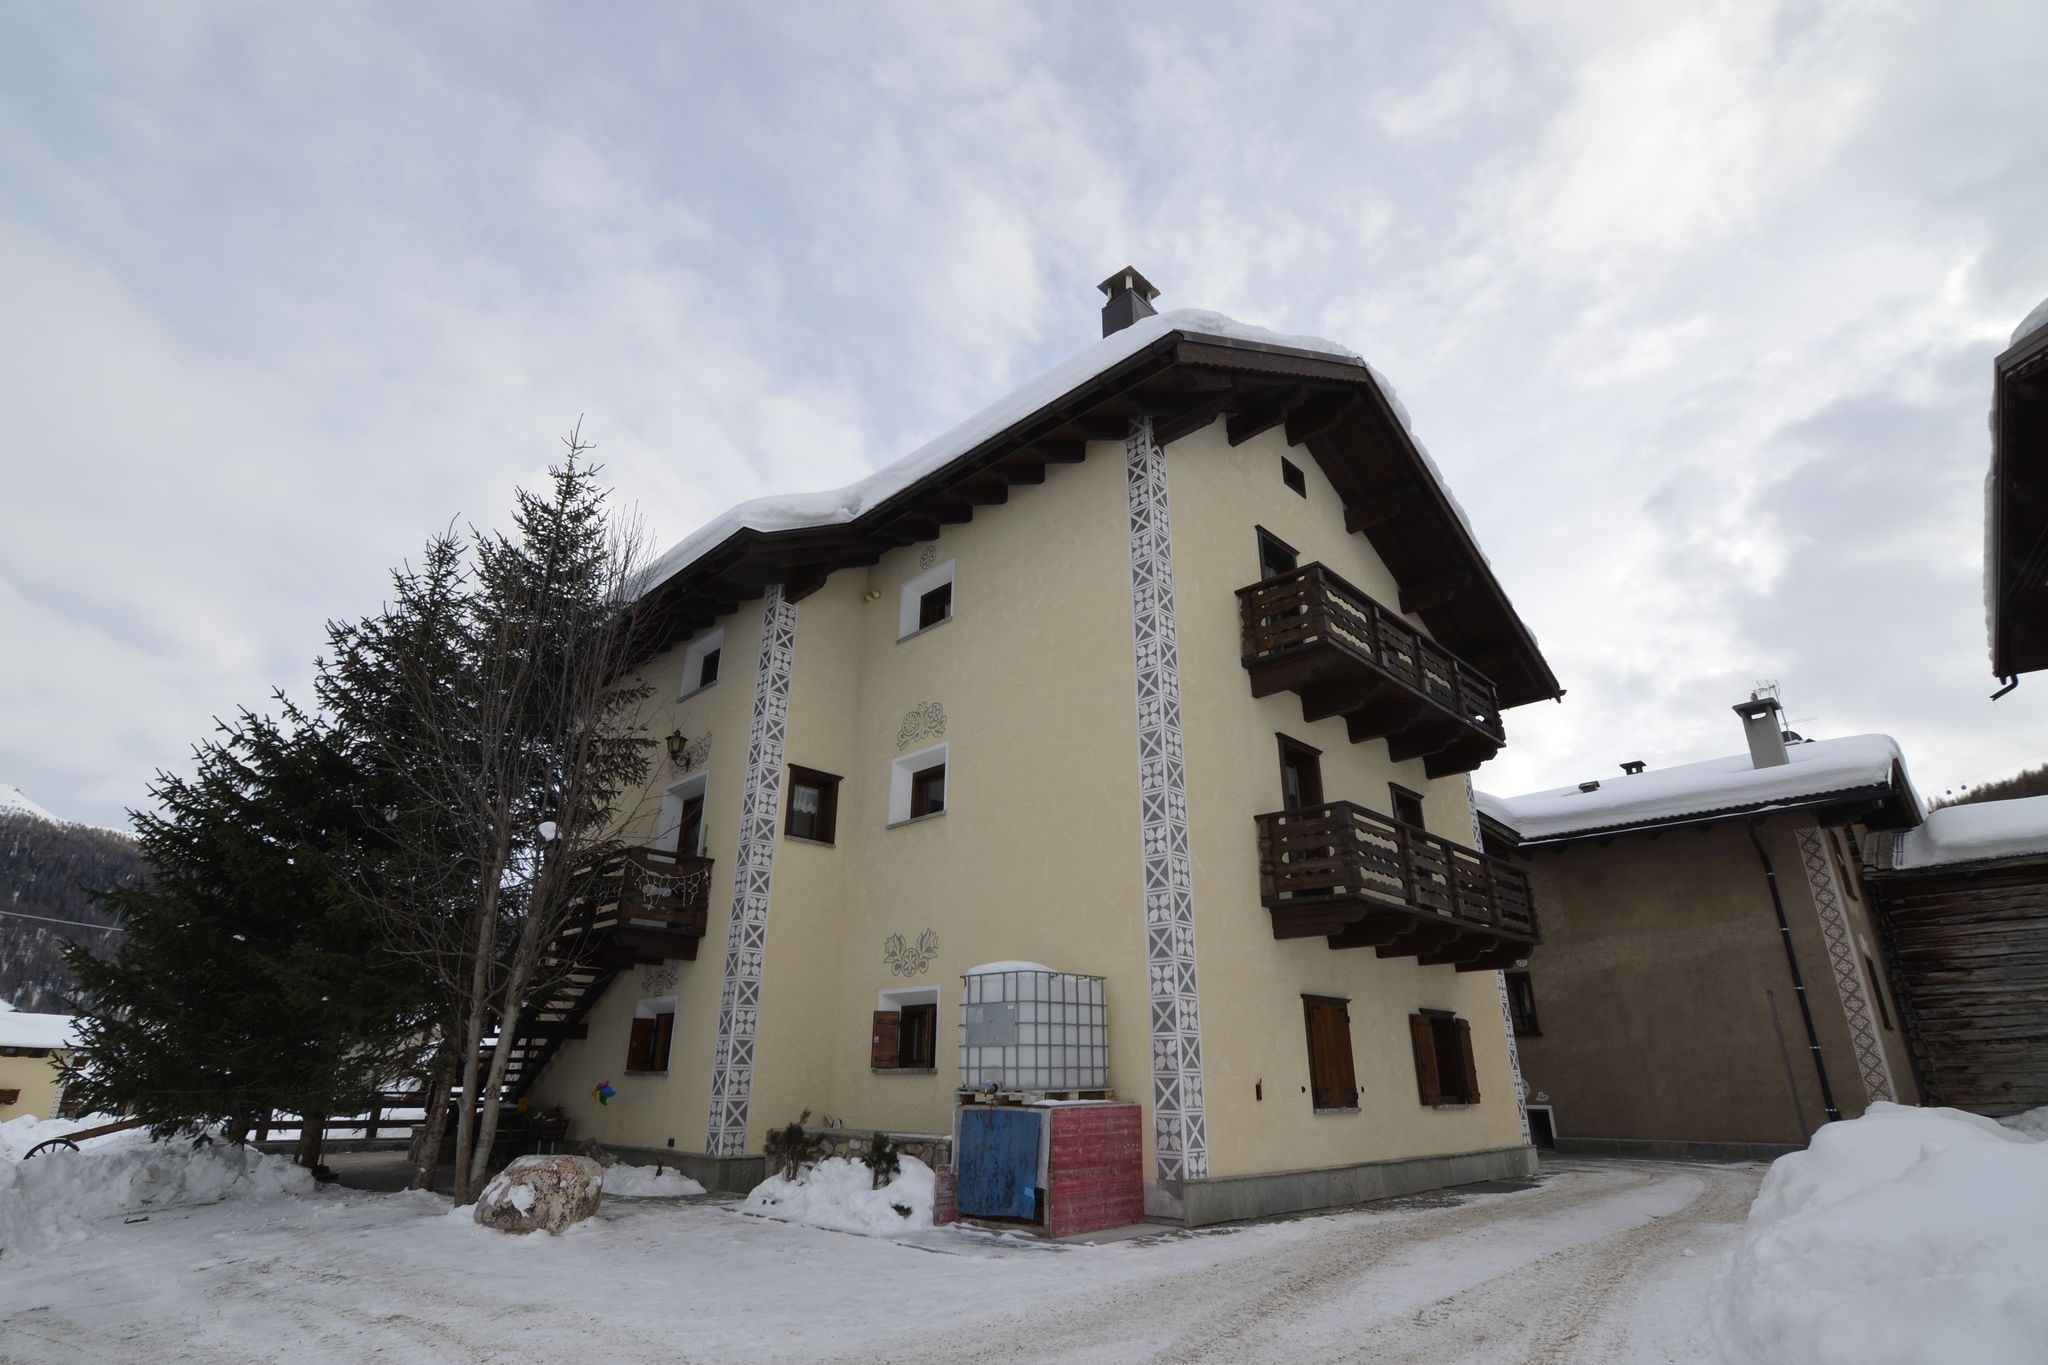 Schönes Ferienhaus in Livigno, Italien nahe dem Skigebiet